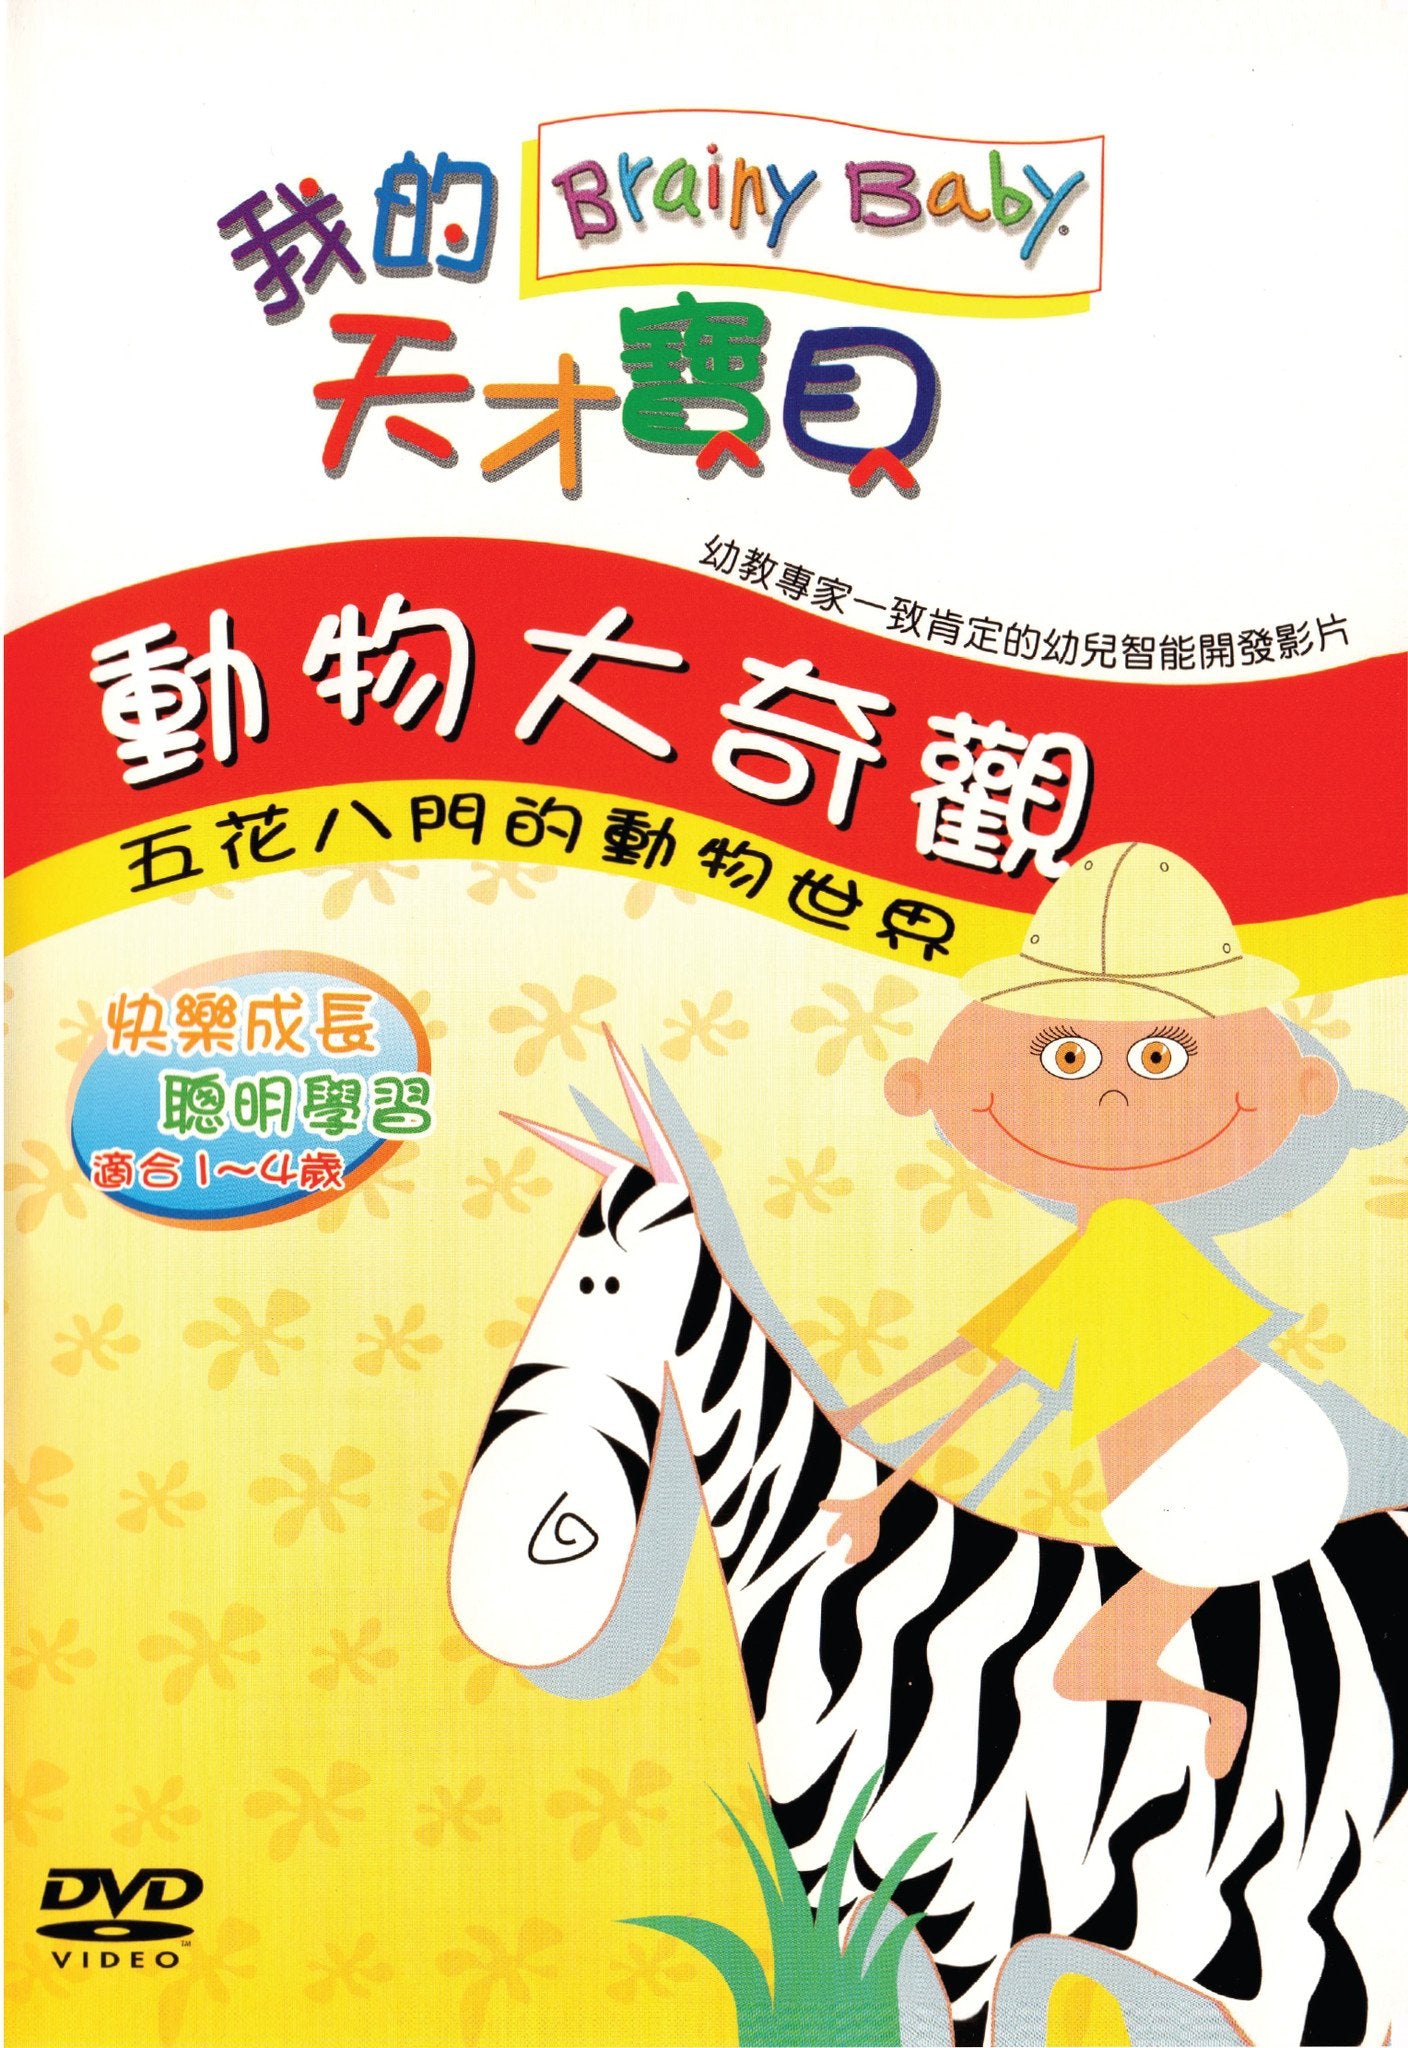 Brainy Baby Animals Chinese Language DVD